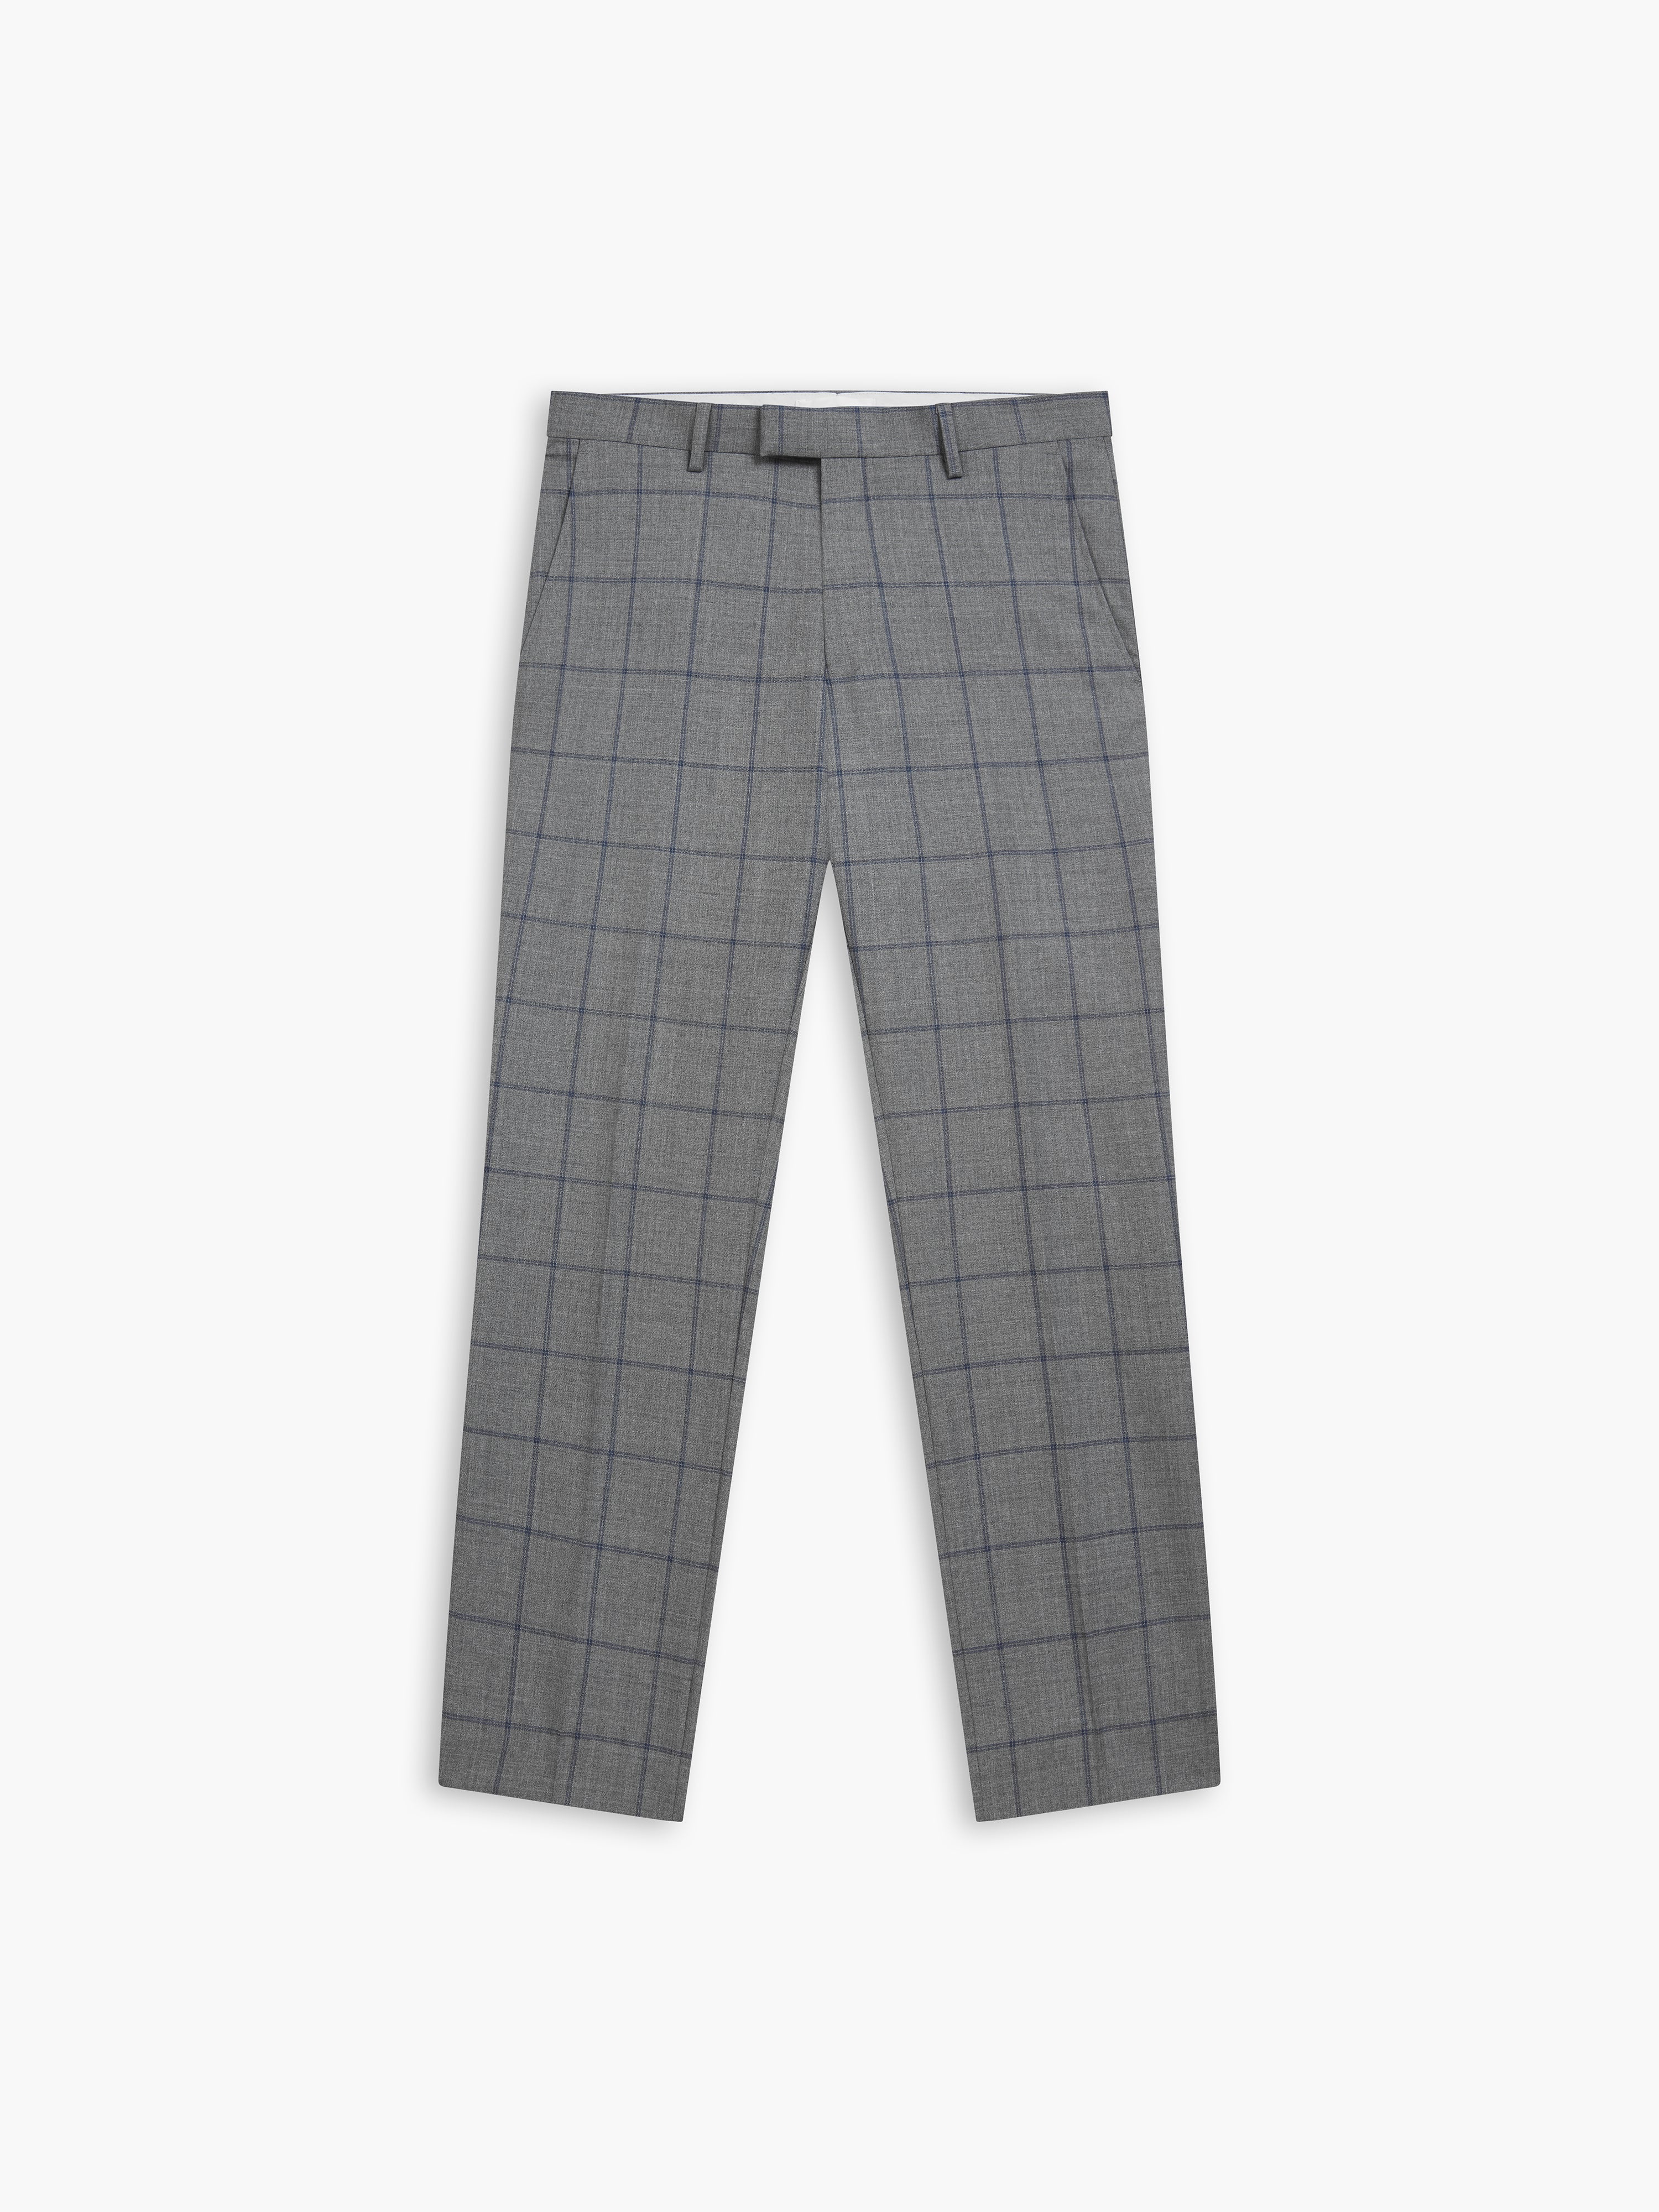 Mens Tweed Trousers in Herringbone, Grey & Navy Blue | XPOSED